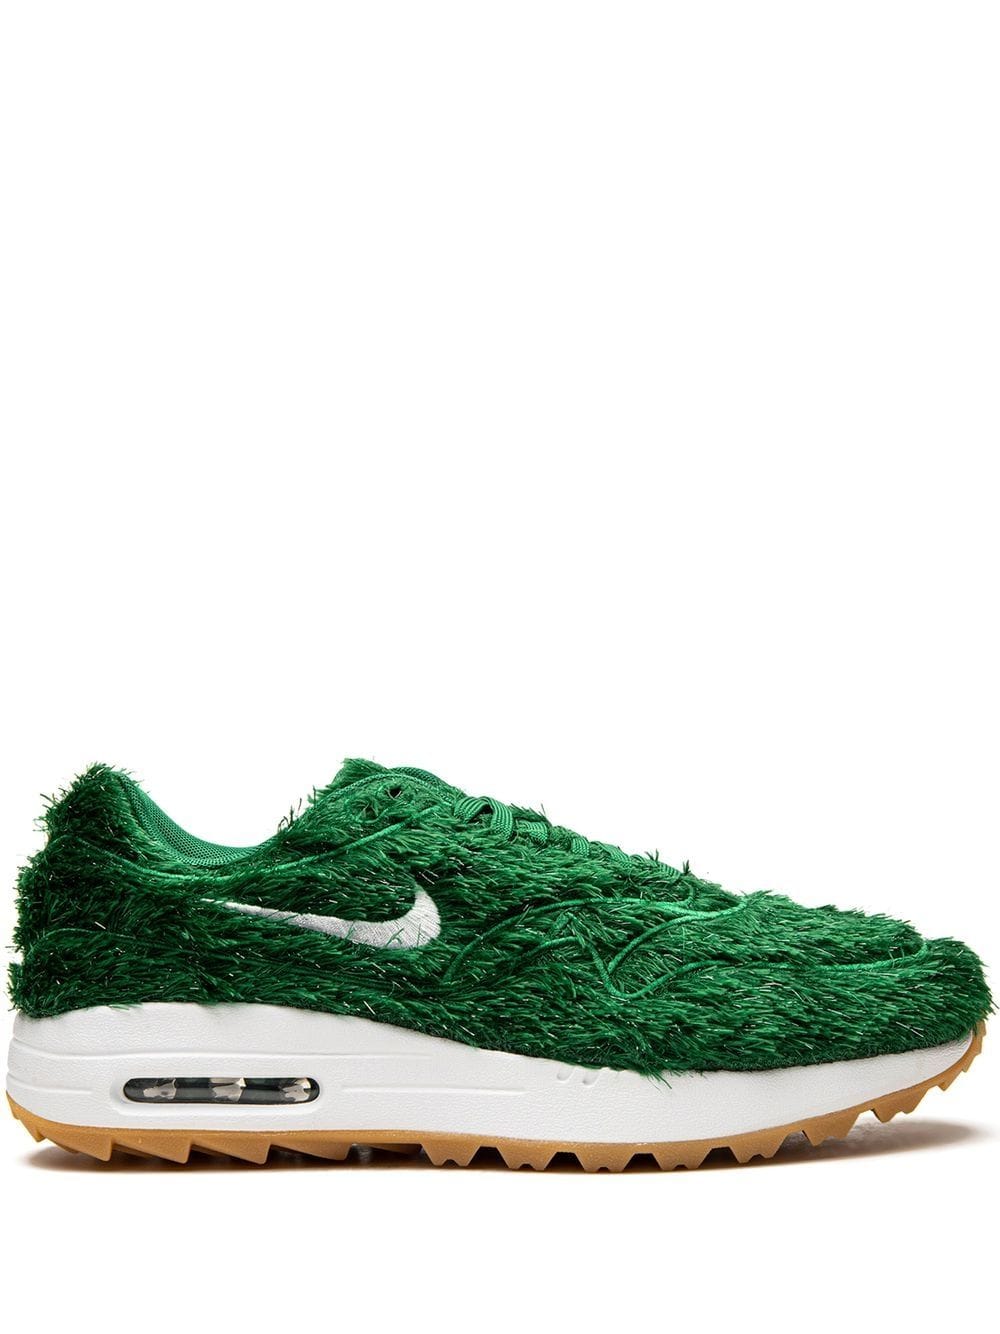 Nike Air Max 1 G NRG "Grass" sneakers - Green von Nike